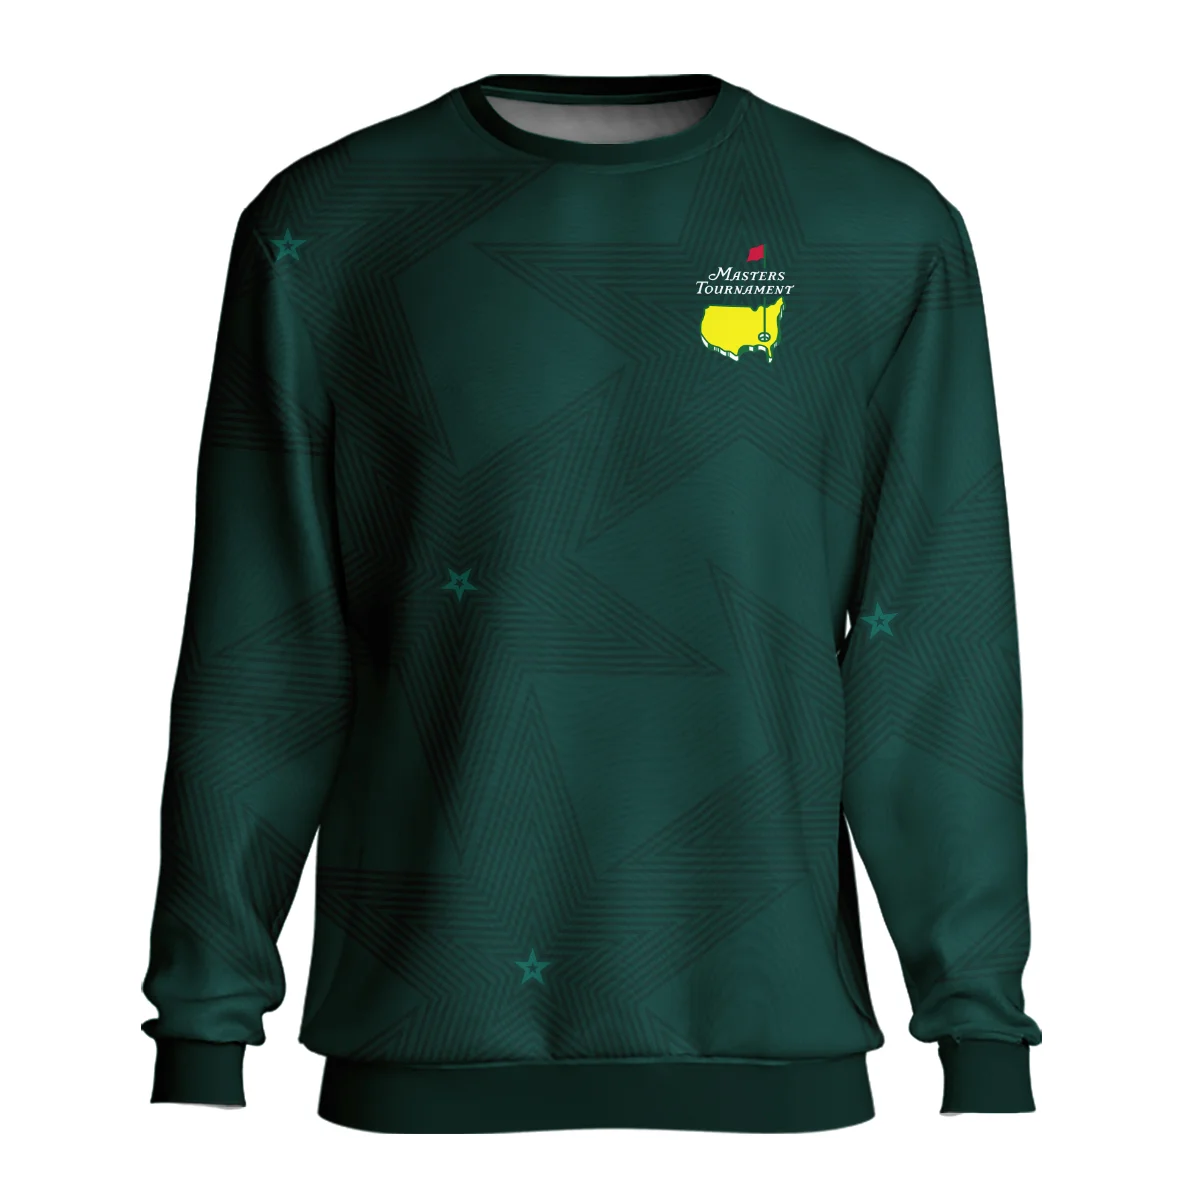 Stars Dark Green Golf Masters Tournament Hoodie Shirt Style Classic Hoodie Shirt